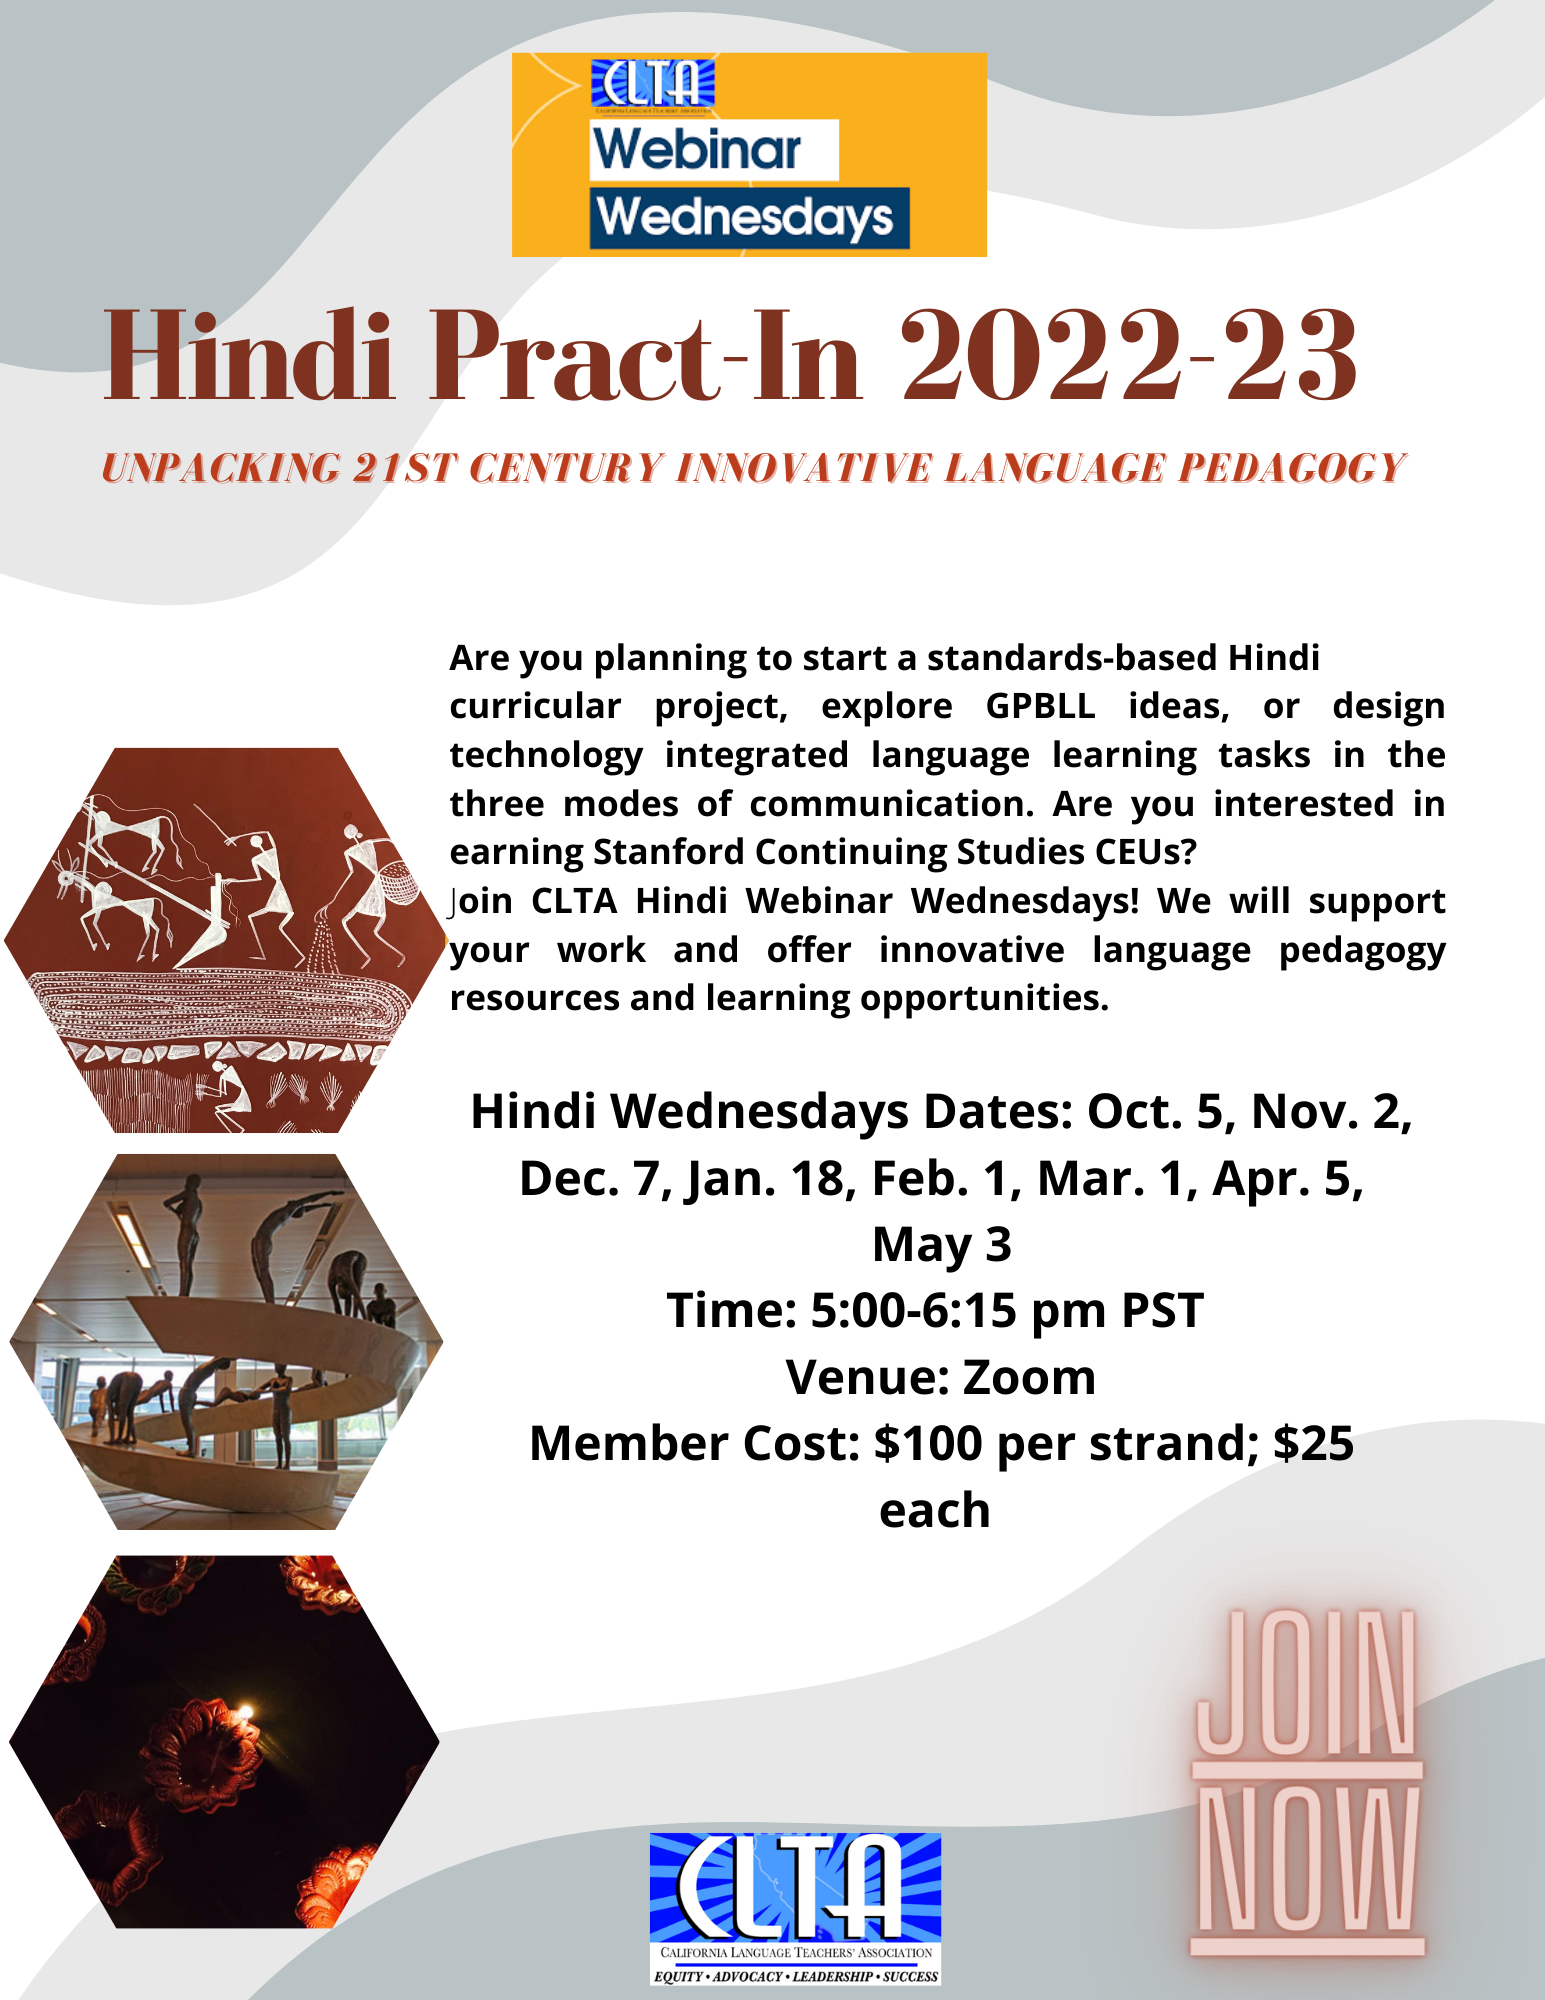 Pract-In’s – Hindi Wednesdays – January 18, 2023